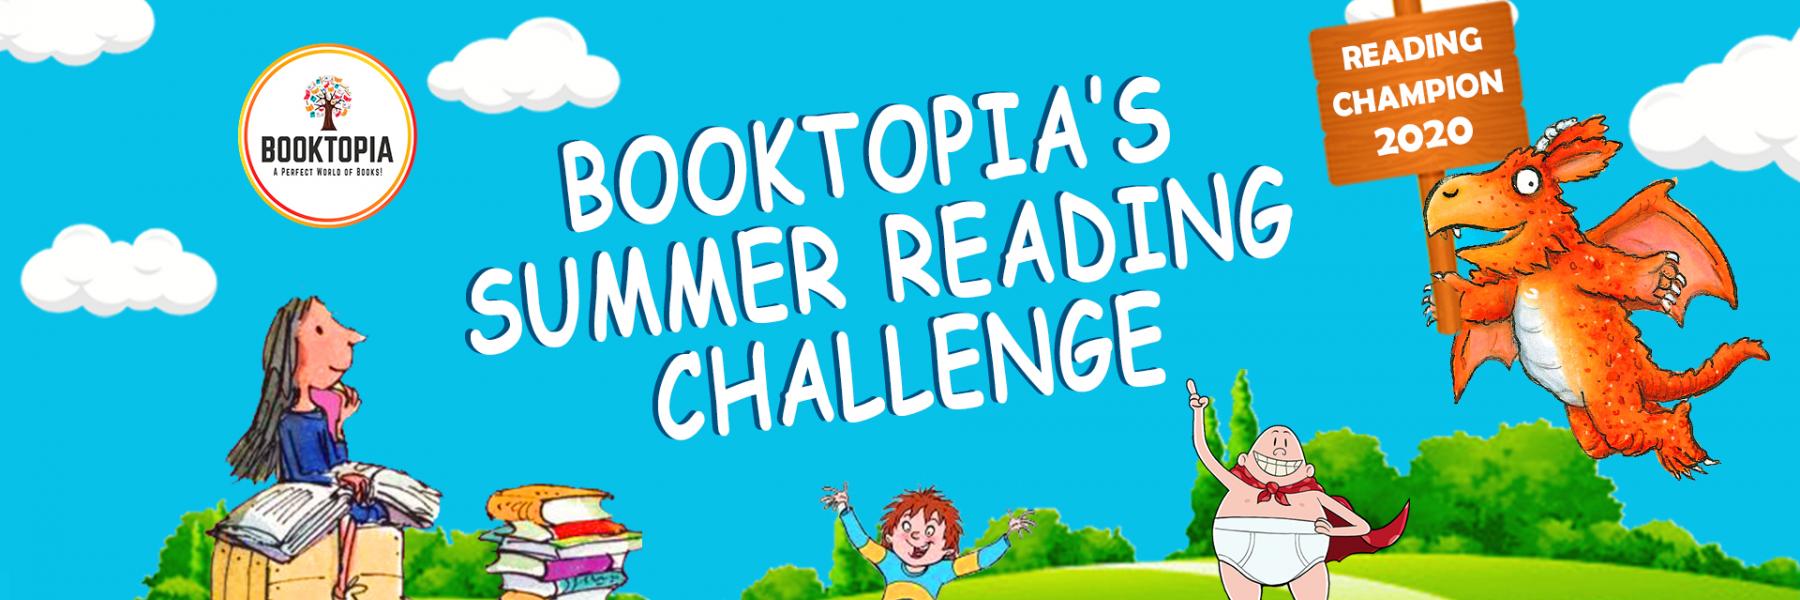 متجر الكتب Booktopia يعلن عن مبادرة "تحدي القراءة لصيف 2020!"